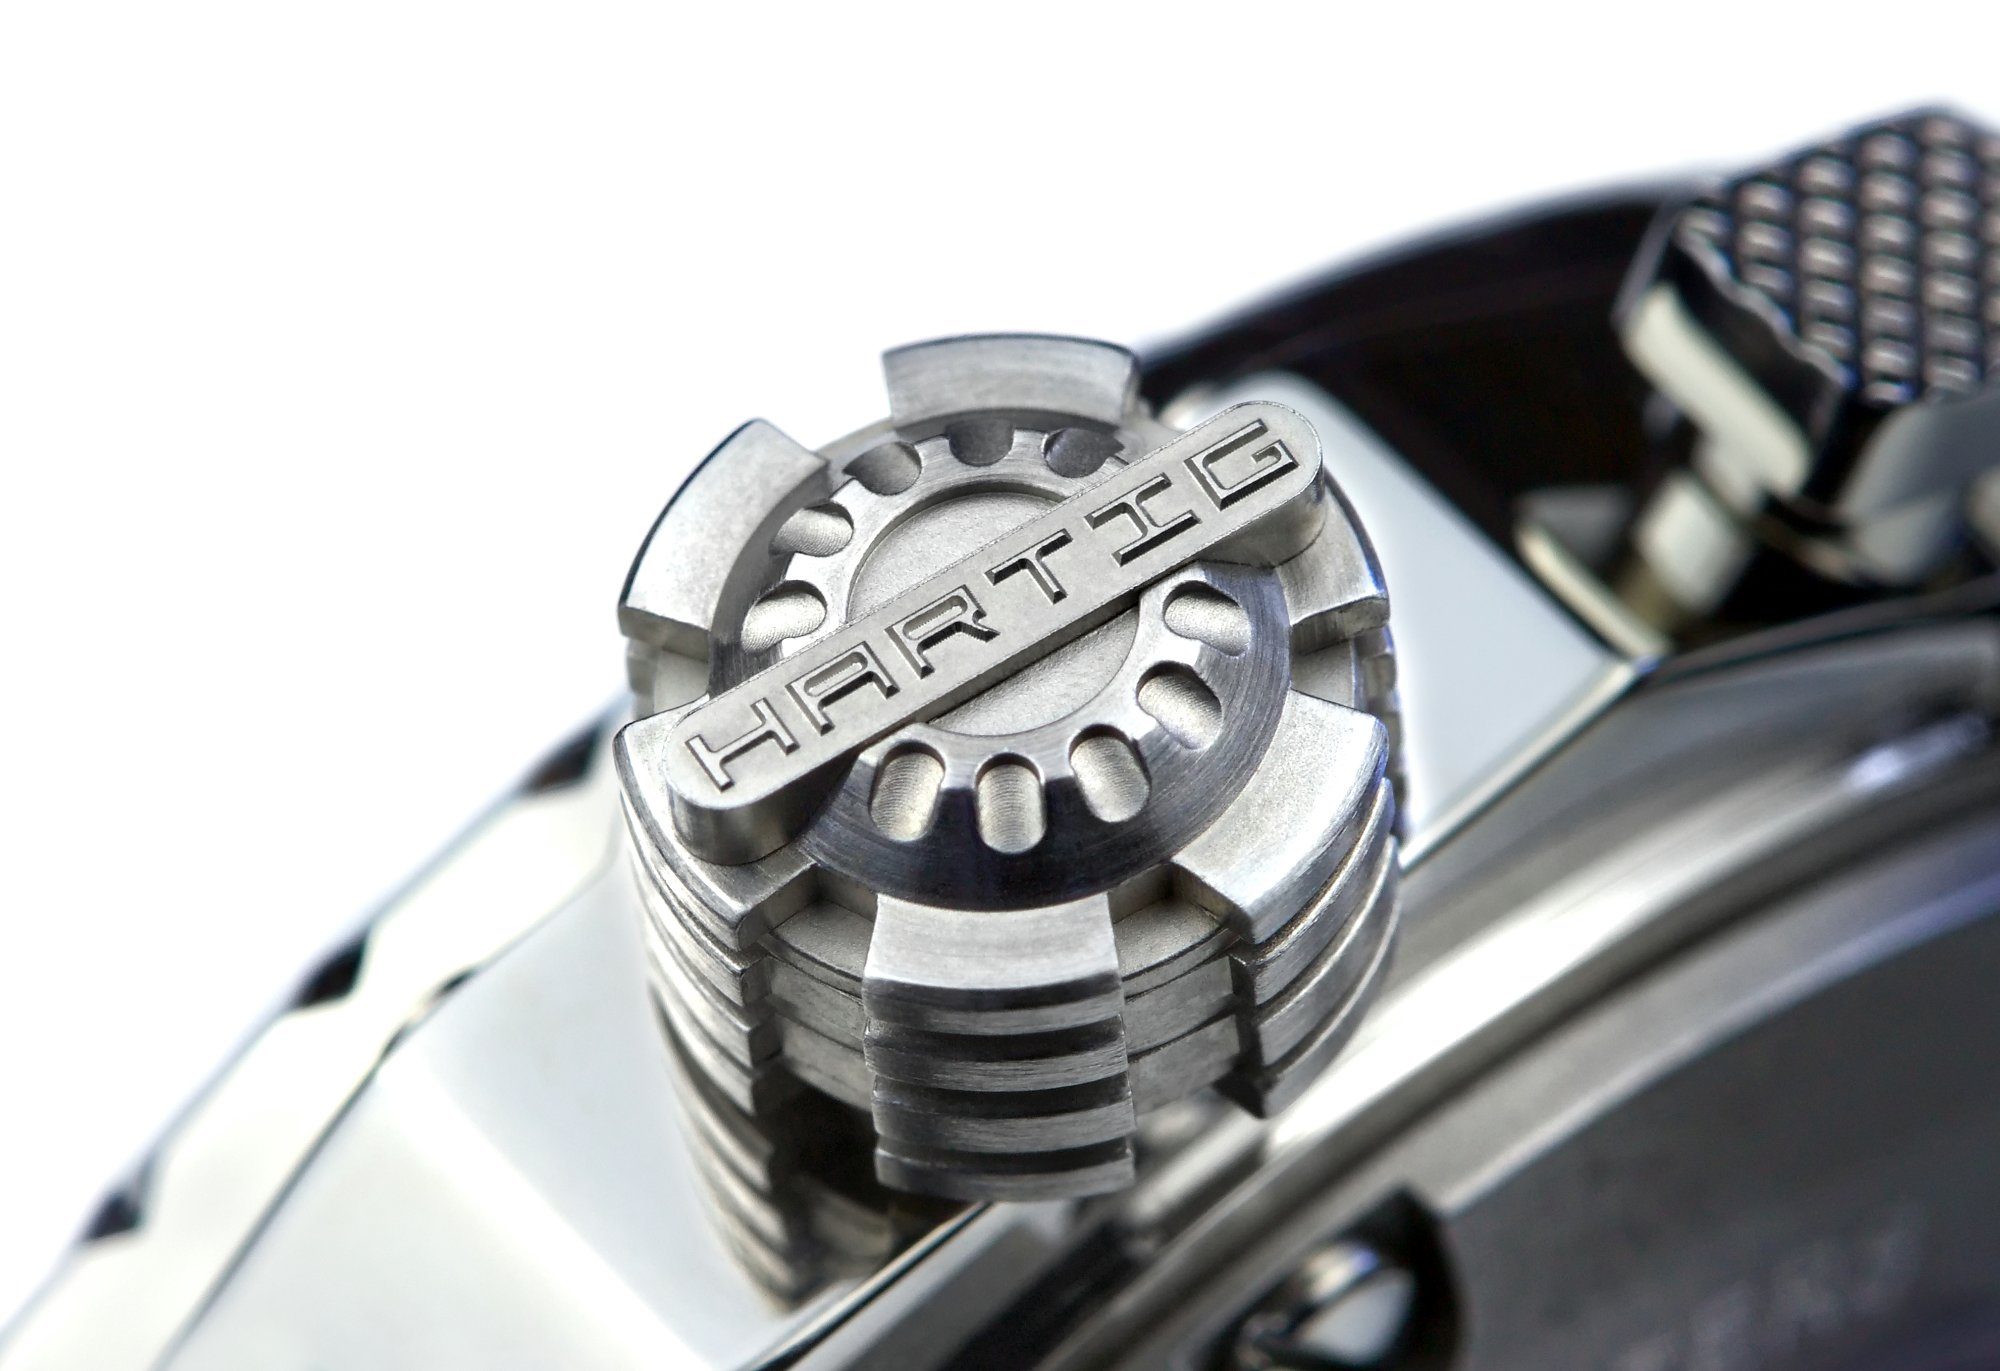 Hartig Timepieces Mechanische white Uhr AH001-2